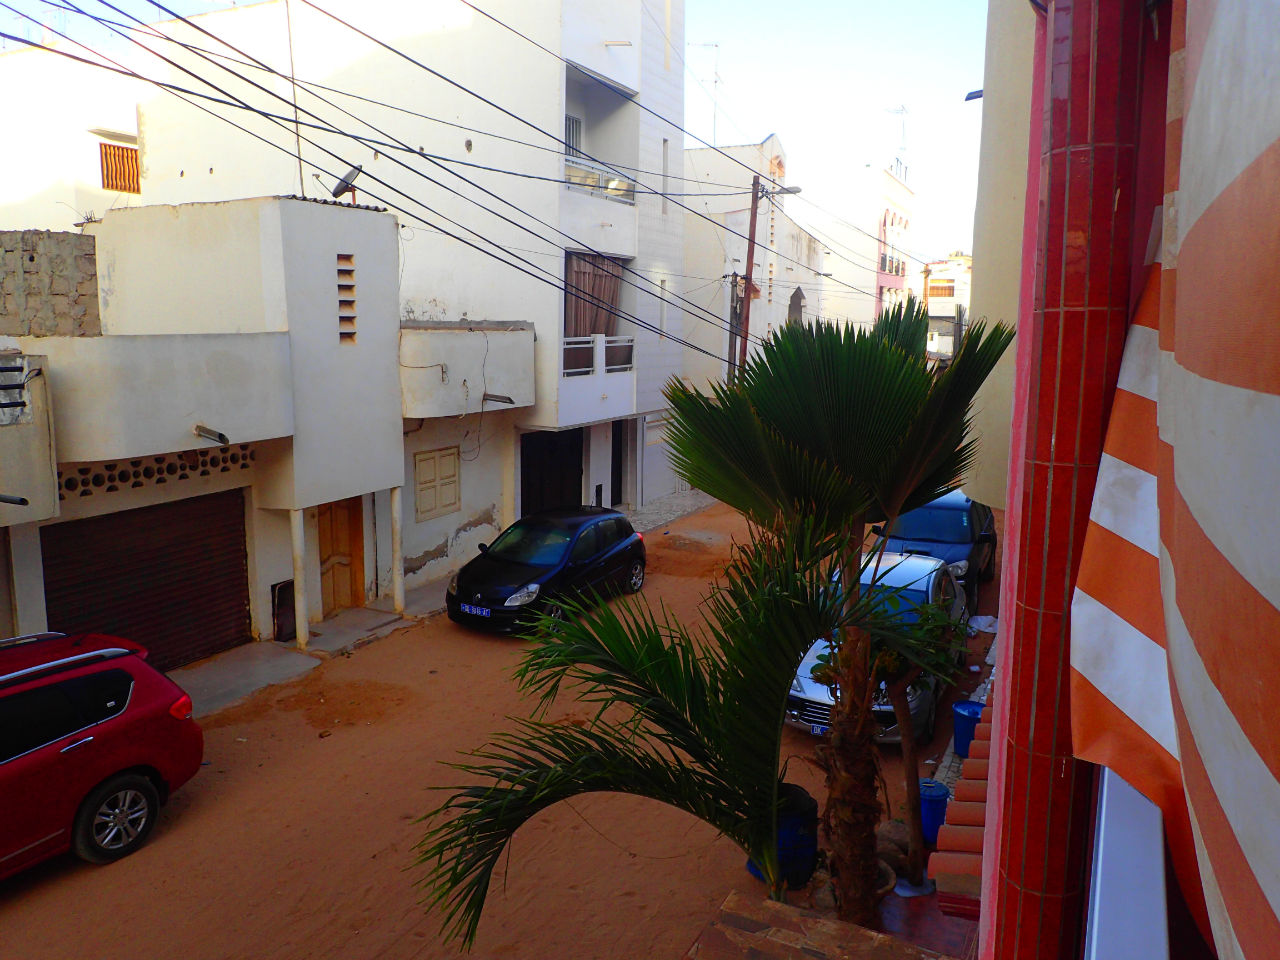 Город в песке Дакар. Лица Африки Дакар, Сенегал